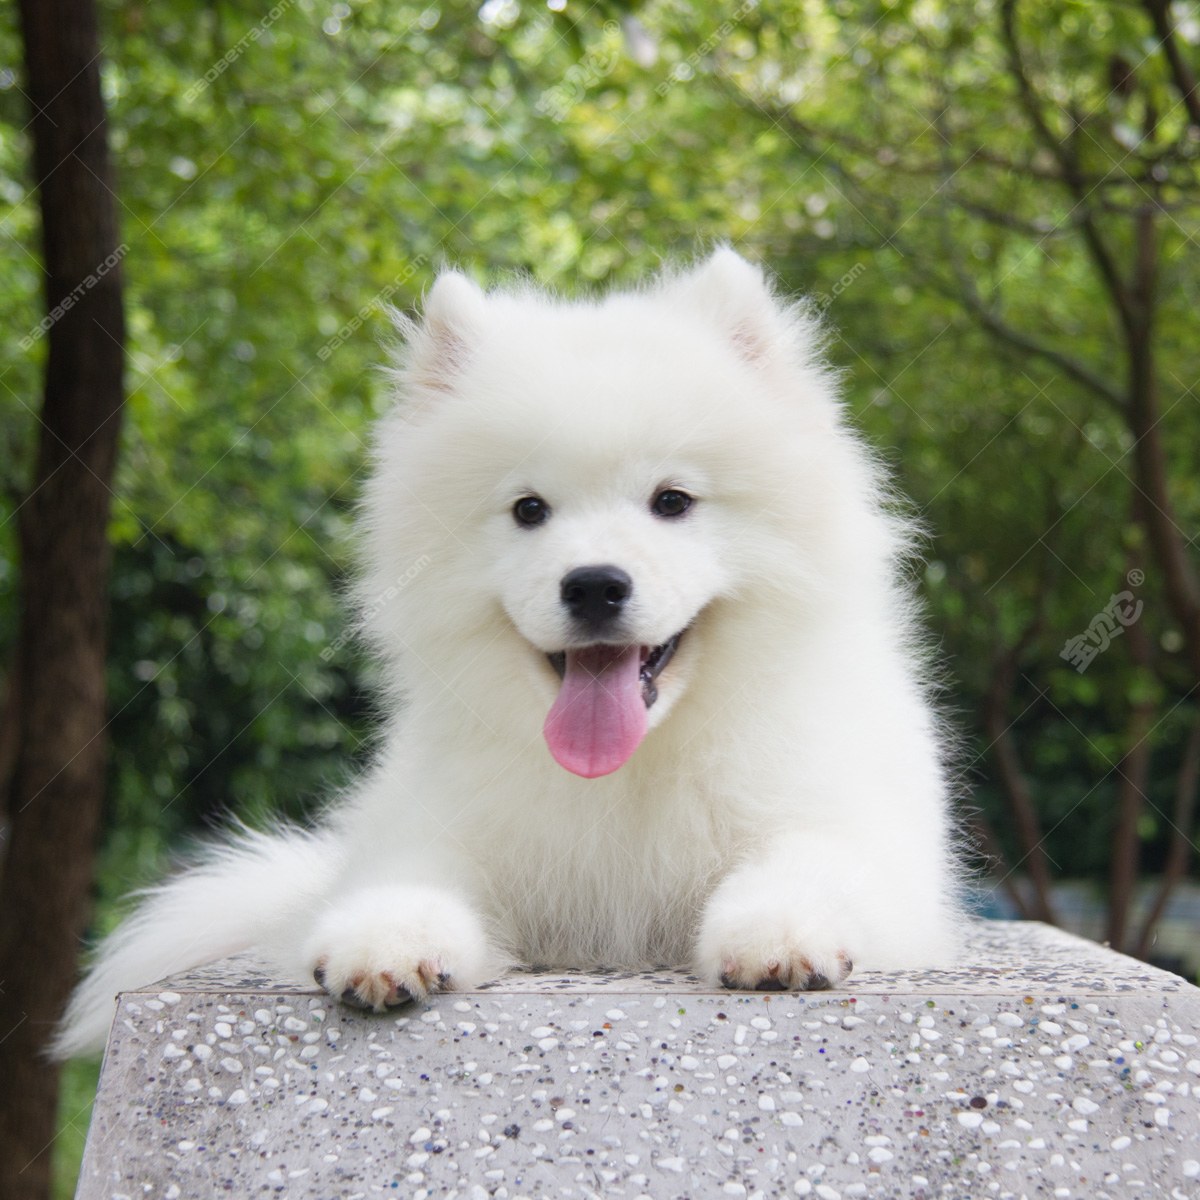 纯种萨摩耶犬幼犬狗狗出售 宠物萨摩耶犬可支付宝交易 萨摩耶犬 /编号10038600 - 宝贝它